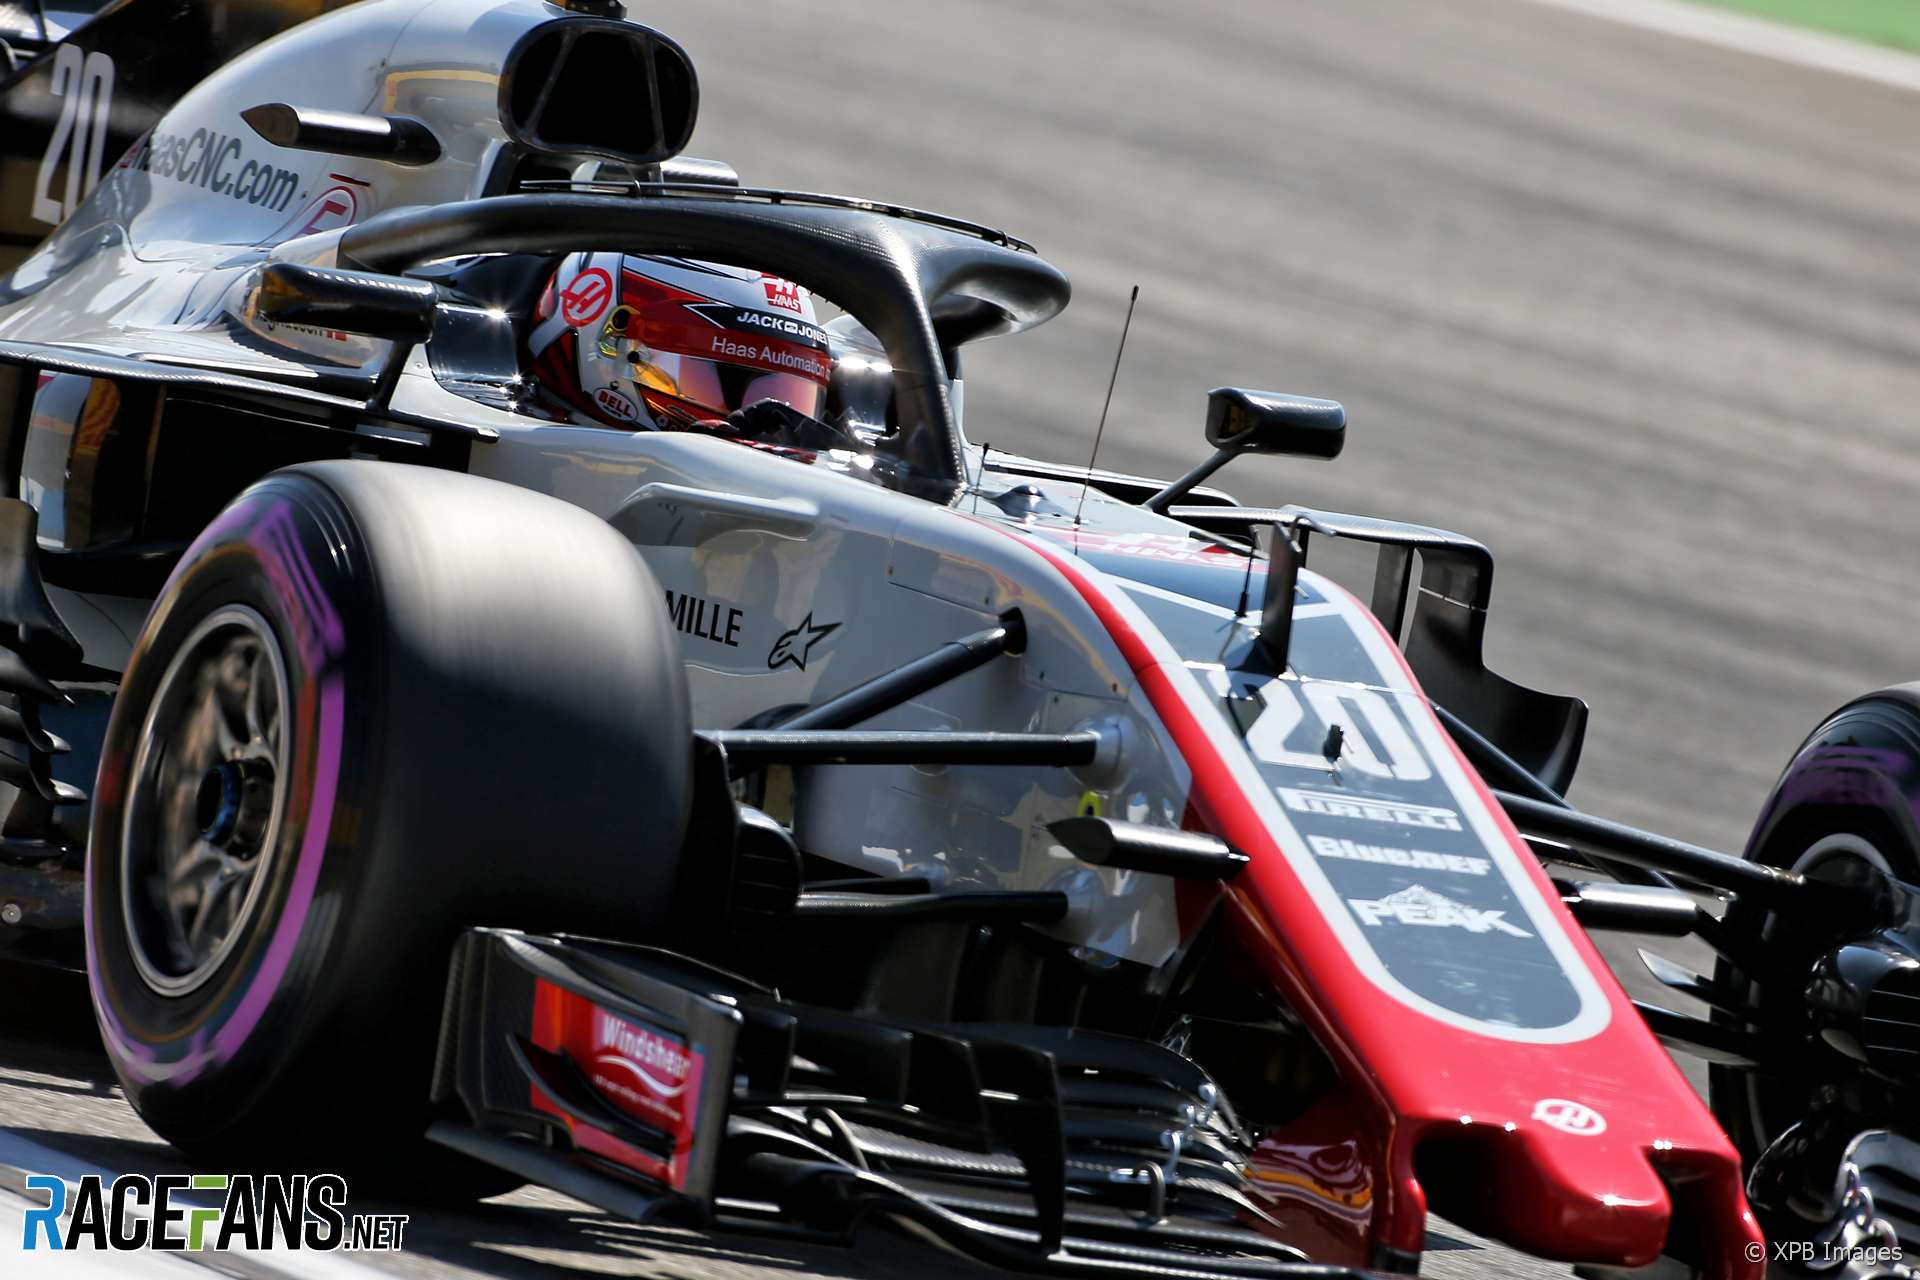 Kevin Magnussen, Haas, Hockenheimring, 2018